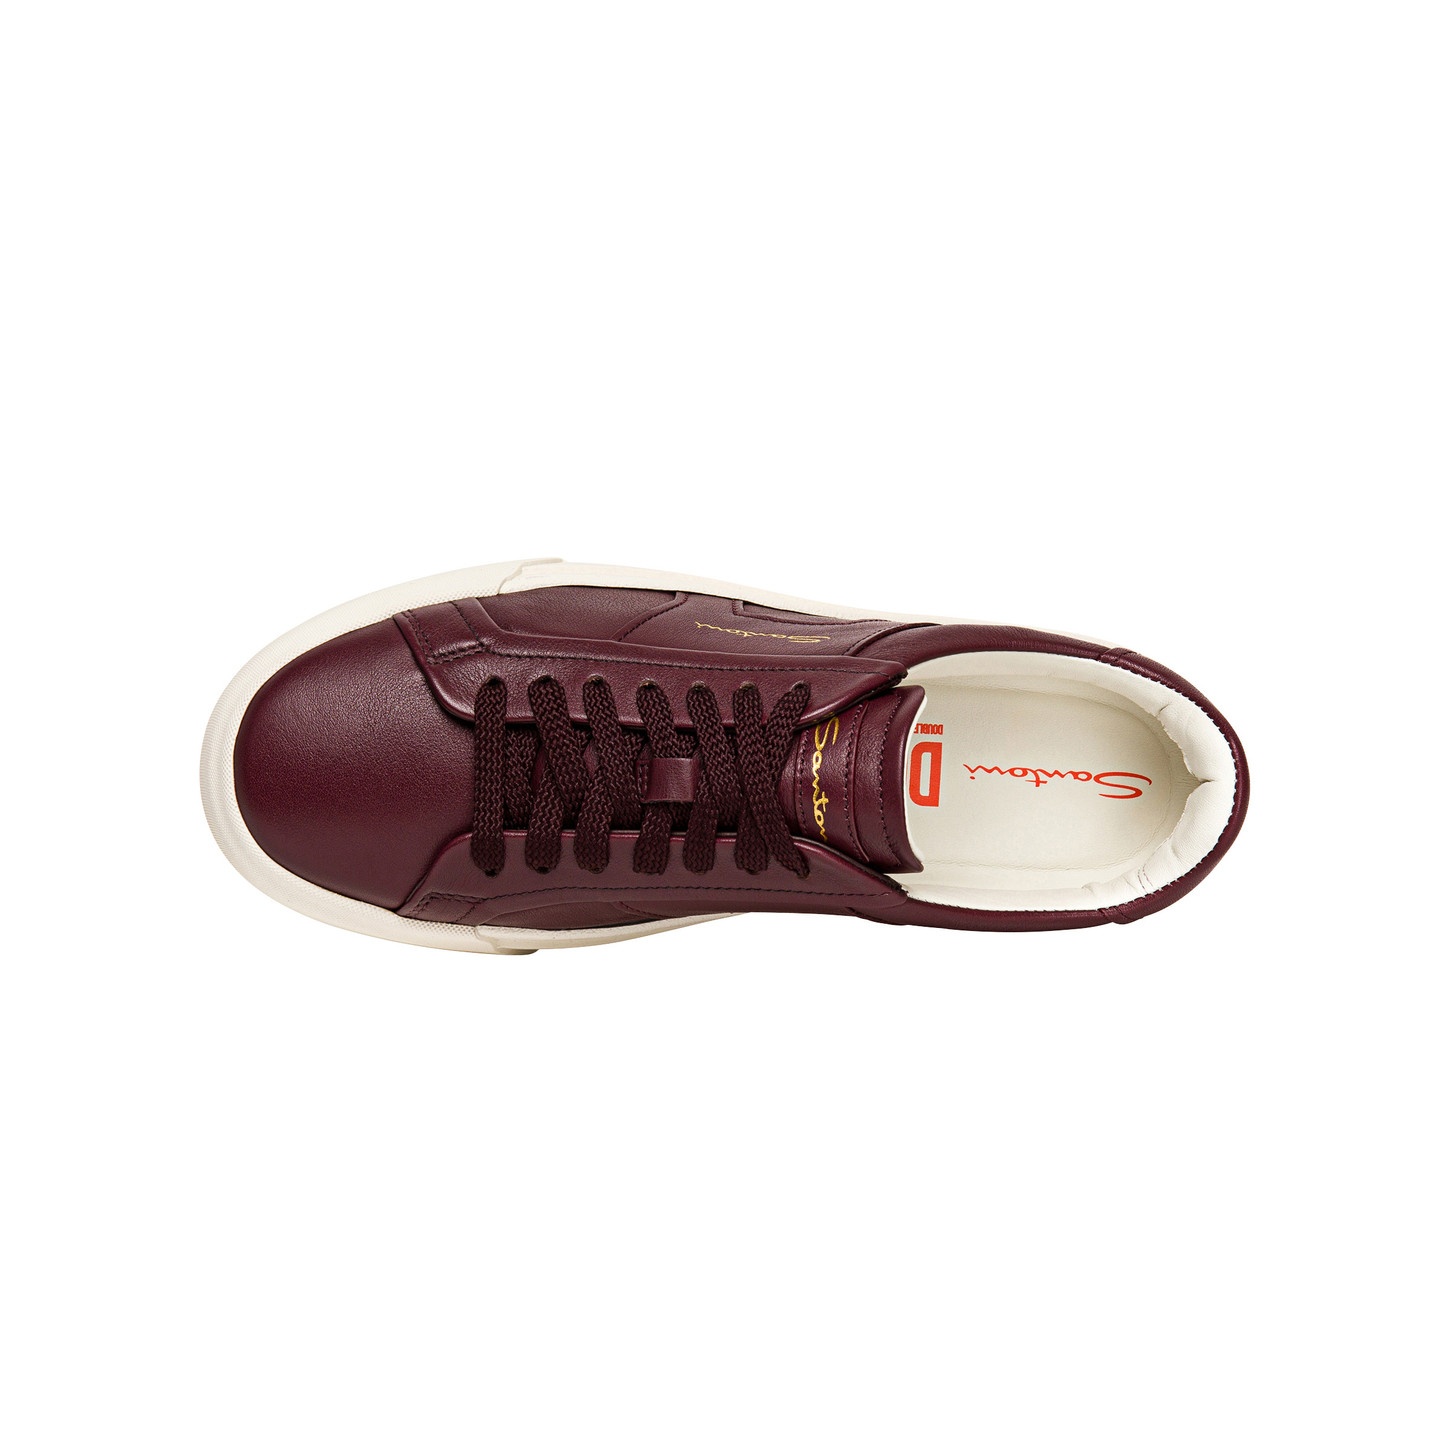 Women’s burgundy leather double buckle sneaker - 4